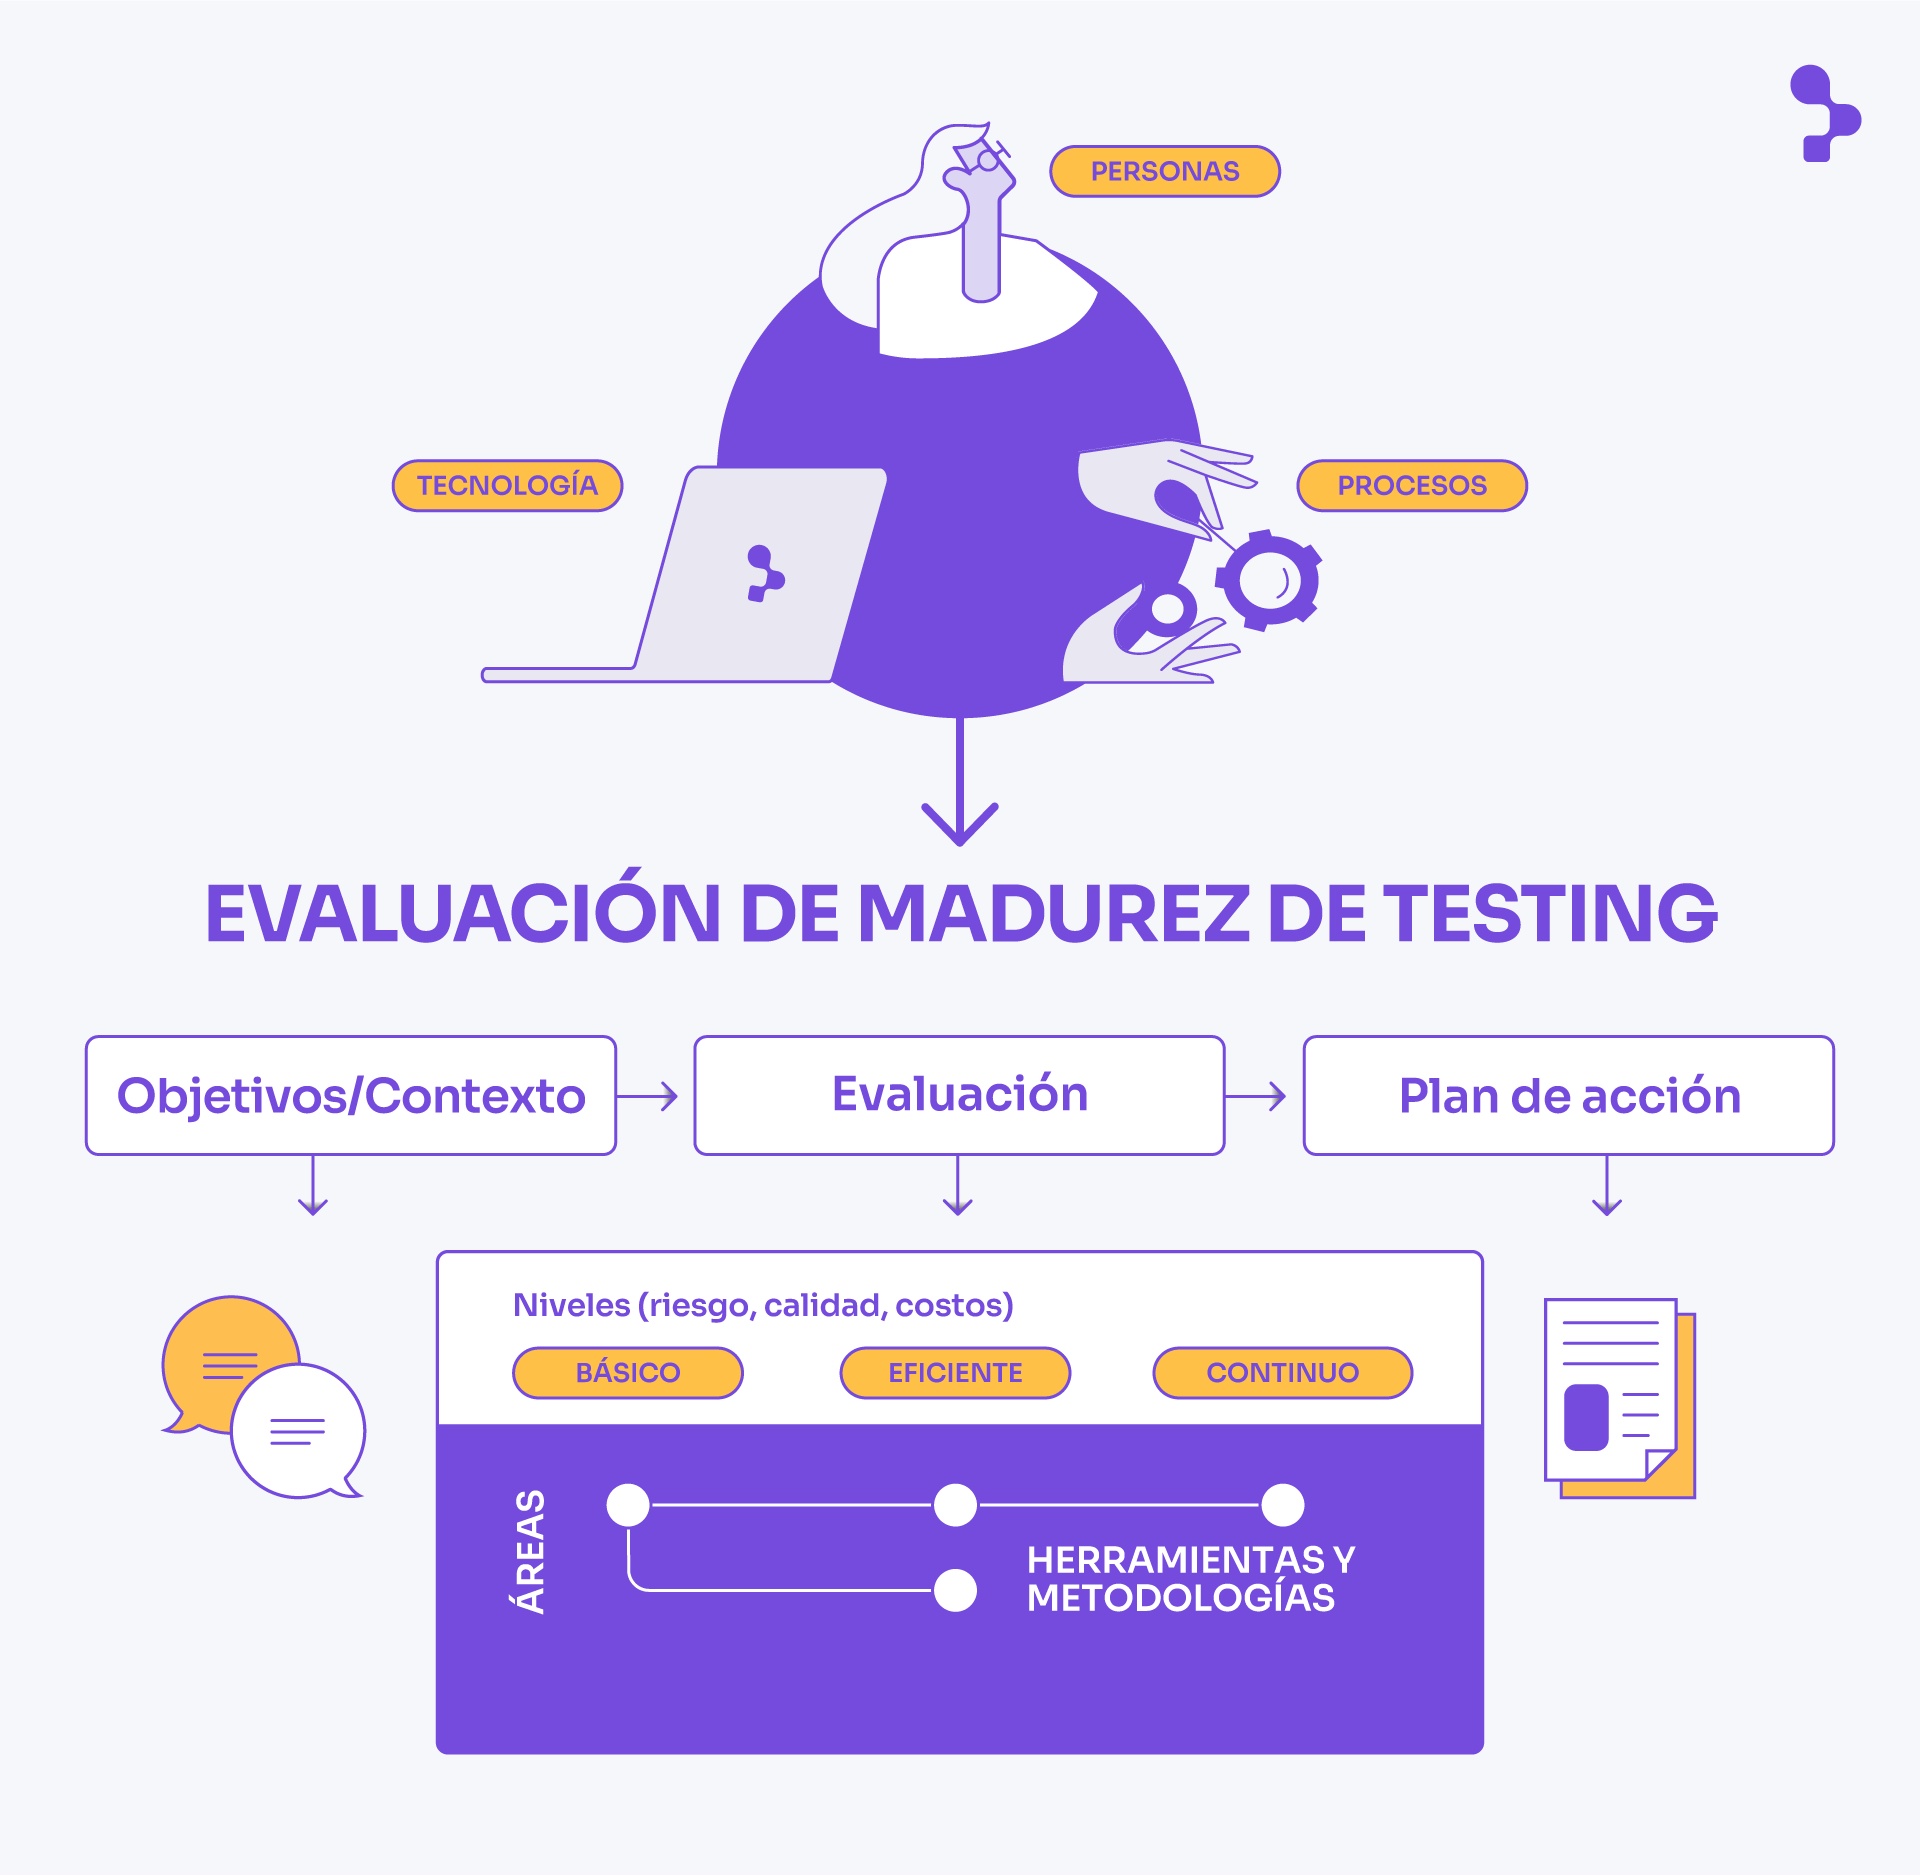 Diagrama: Evaluación de madurez de testing. Compuesto por 3 pilares: Tecnología, personas y procesos. Y en la gráfica se representan los 3 pasos para realizar la evaluación: Objetivos/Contextos, evaluación y plan de acción.